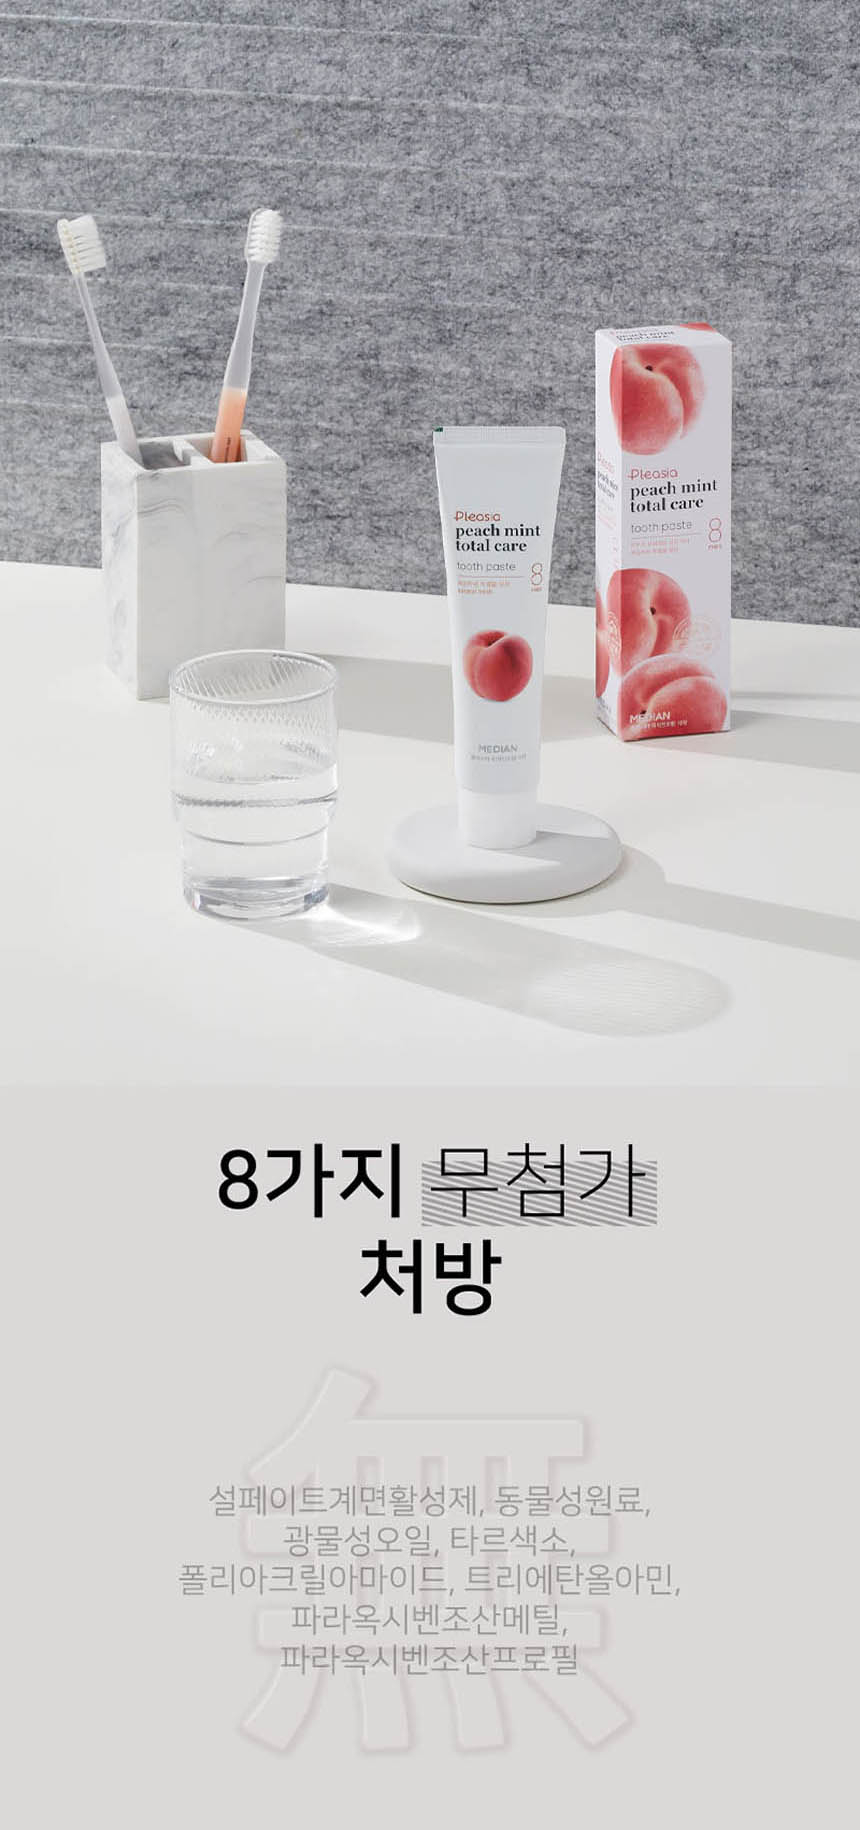 韓國食品-[아모레] 플레시아 토탈케어 치약 (피치민트) 120g